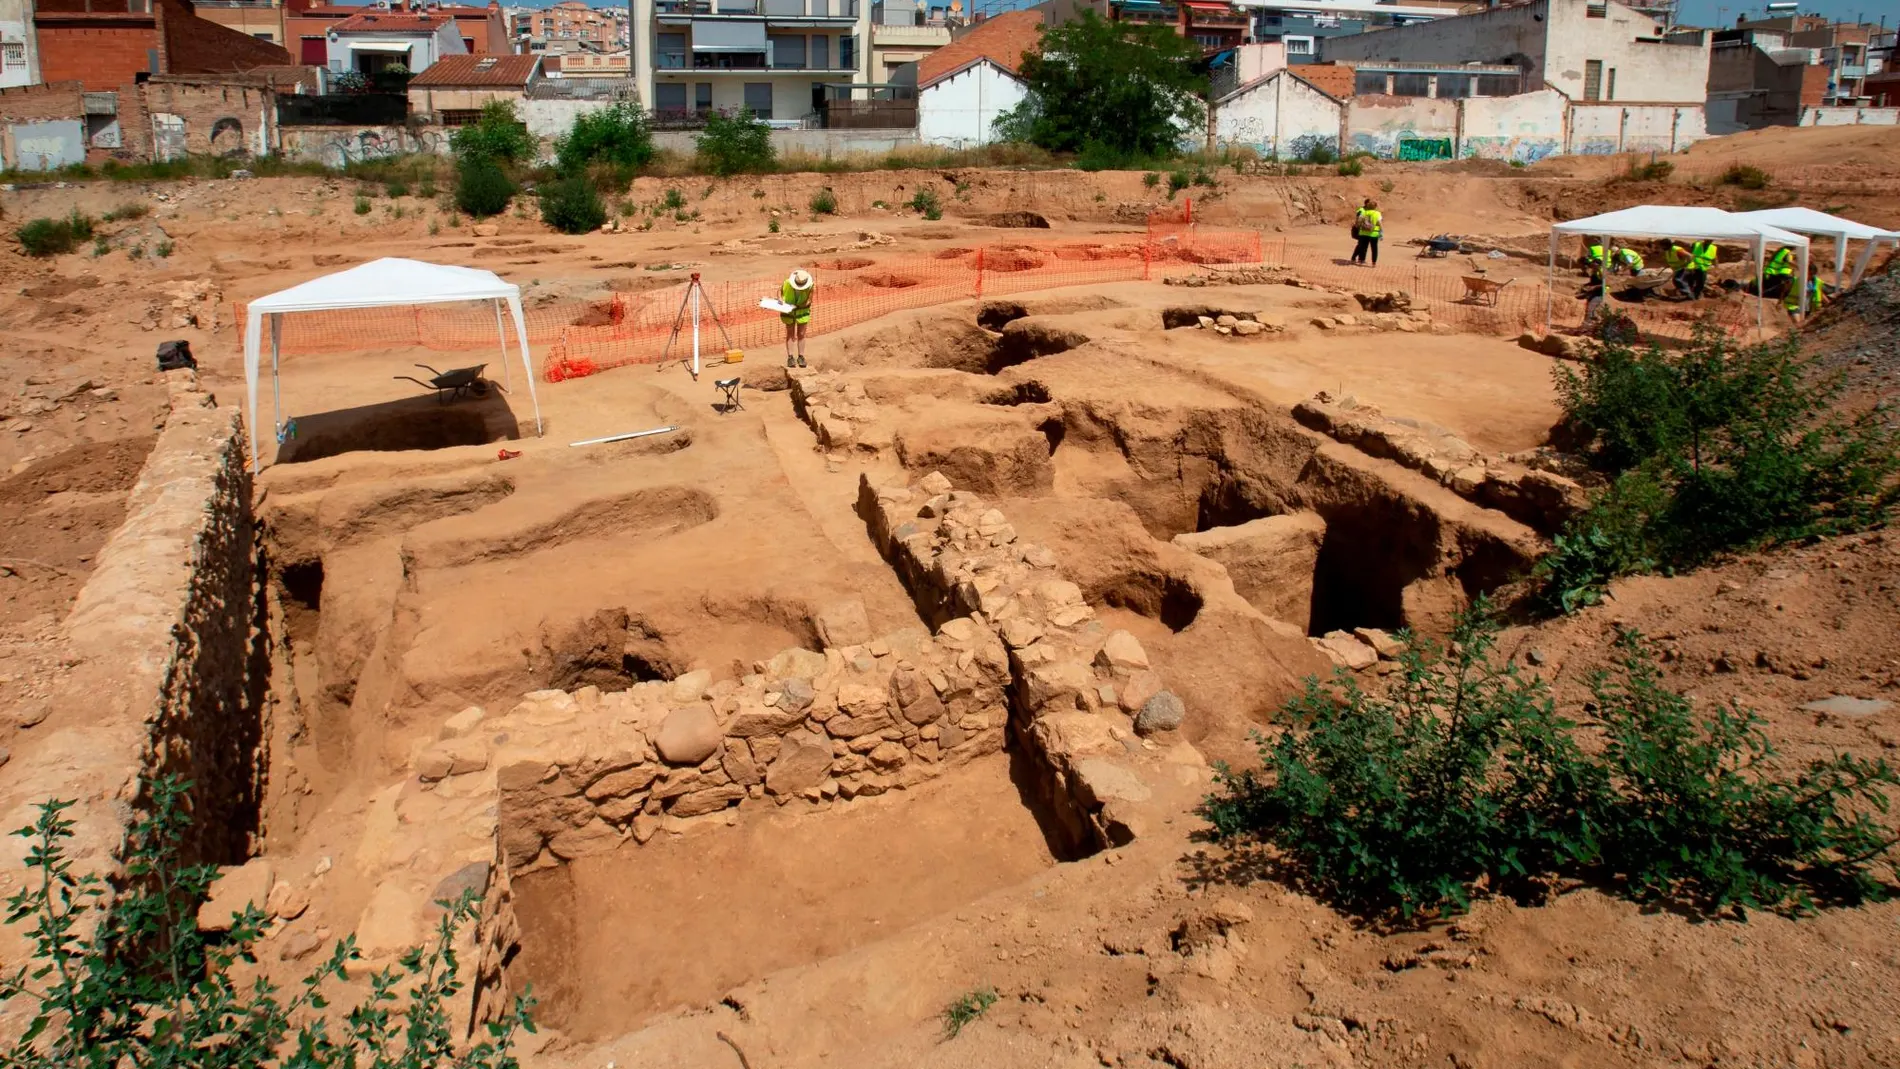 Intervención arqueológica en el solar de una antigua fábrica de Badalona, que ha permitido documentar la existencia de una antigua villa romana